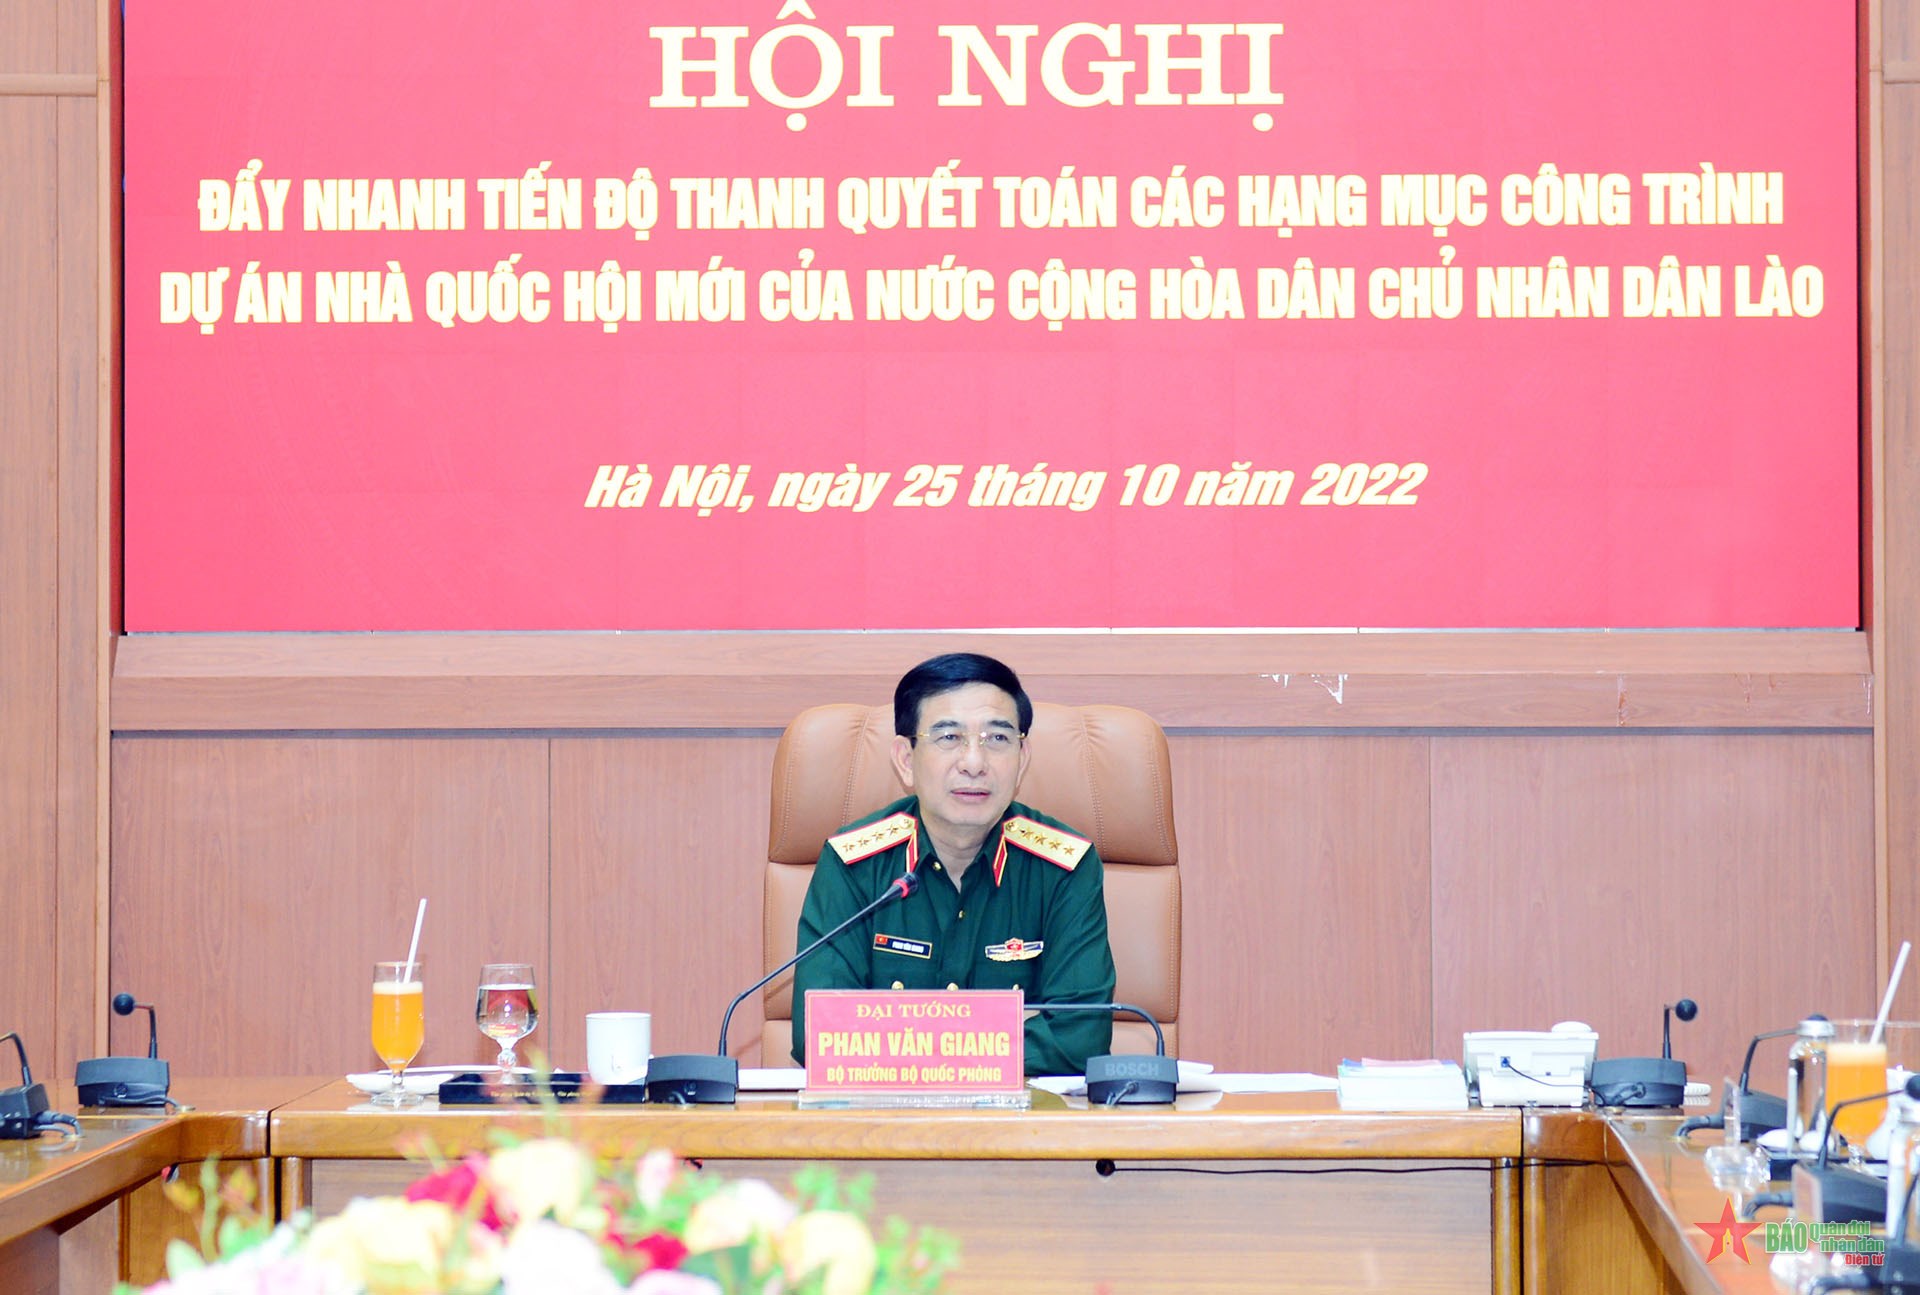 Đẩy nhanh tiến độ quyết toán các hạng mục công trình dự án nhà Quốc hội mới của nước Cộng hòa Dân chủ nhân dân Lào